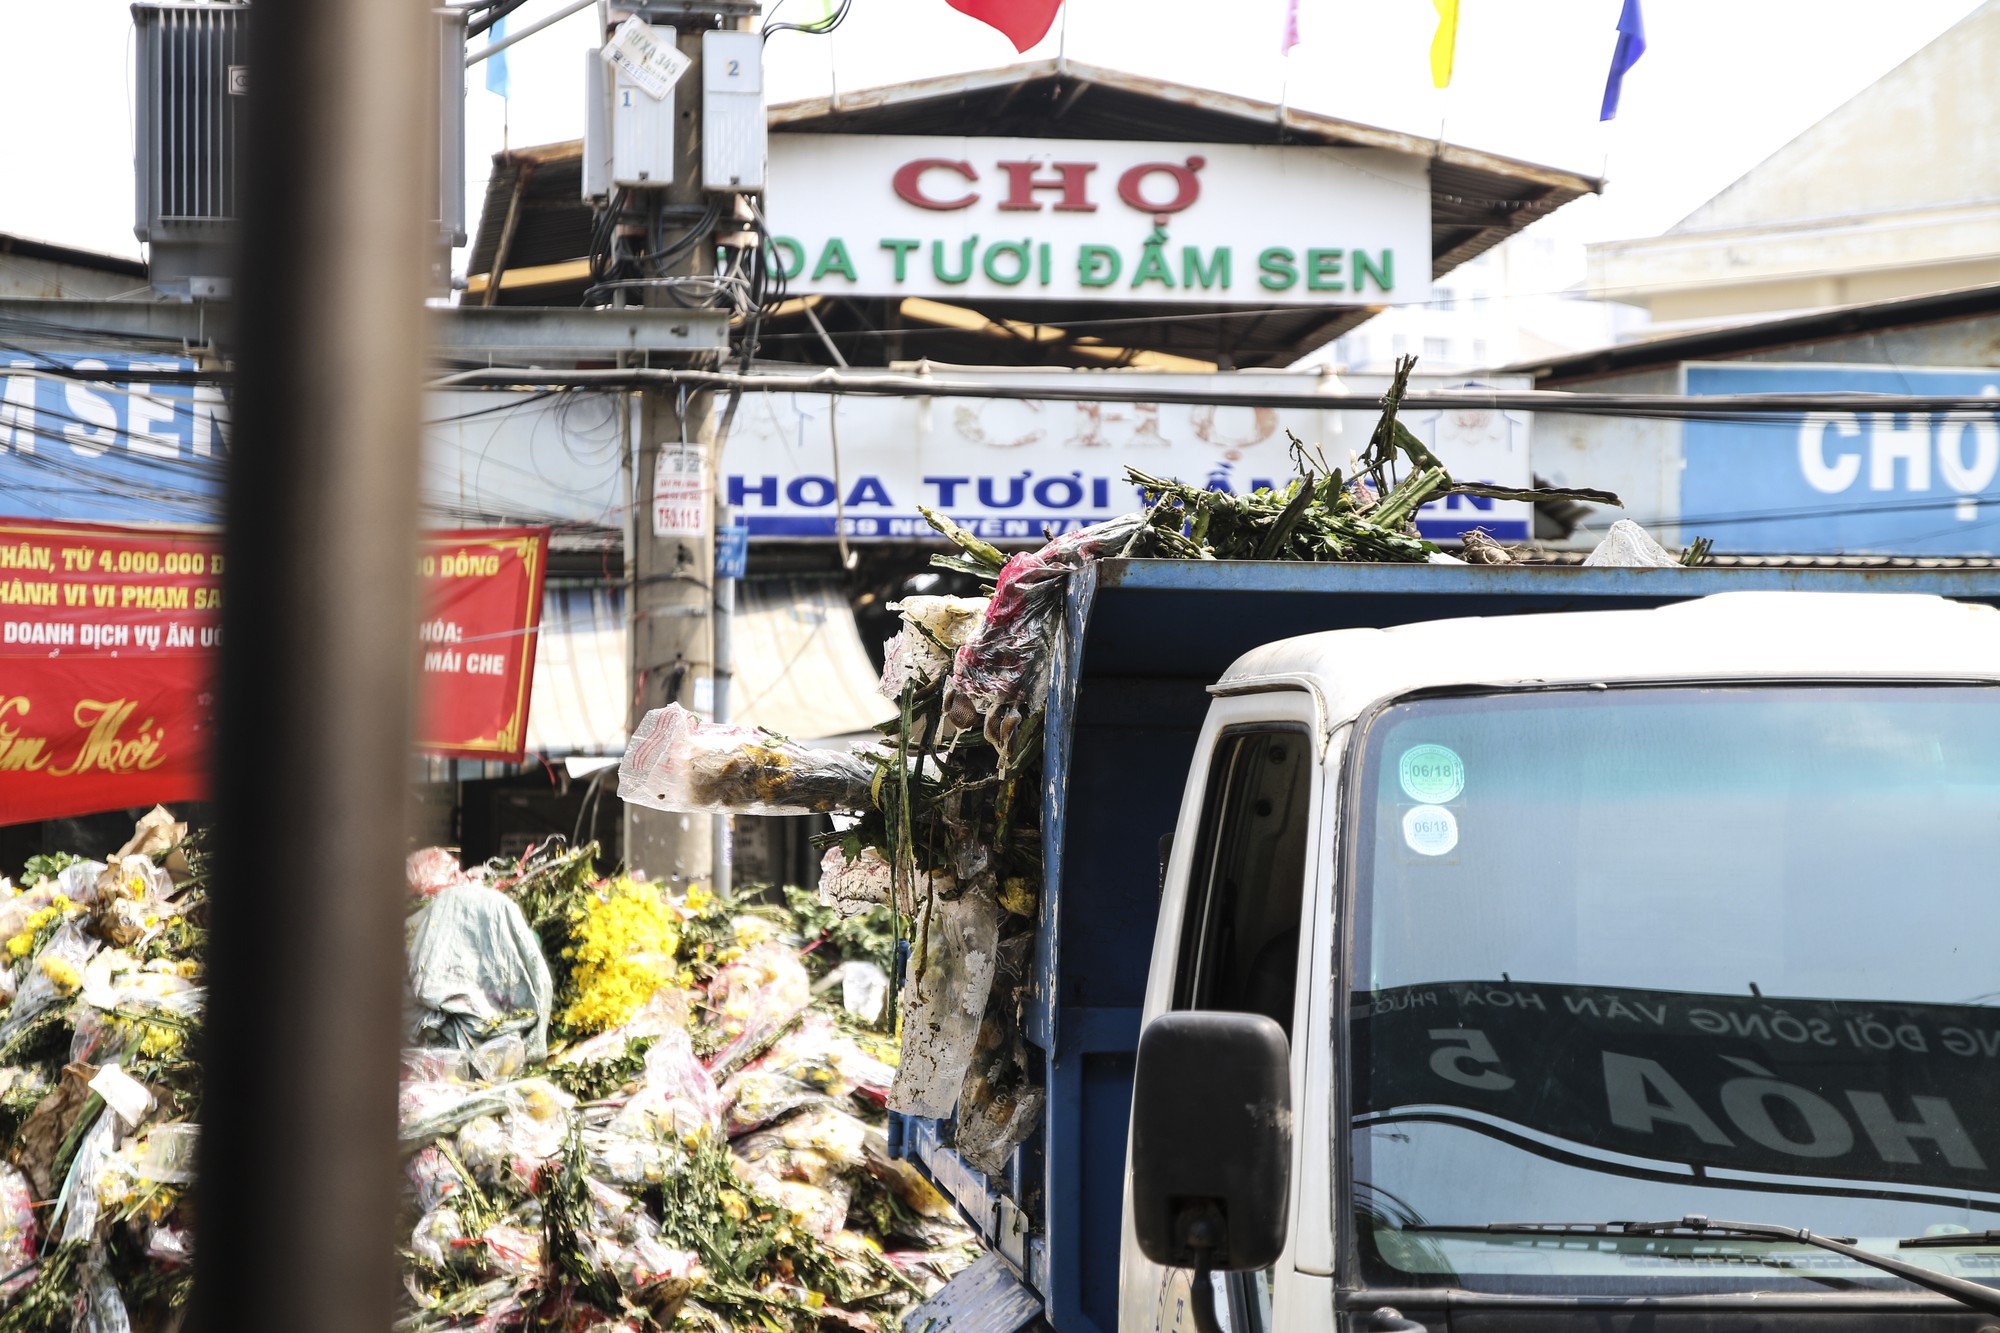 Hoa Tết dội chợ, chất như núi ở chợ hoa sỉ Đầm Sen, TP HCM - Ảnh 8.